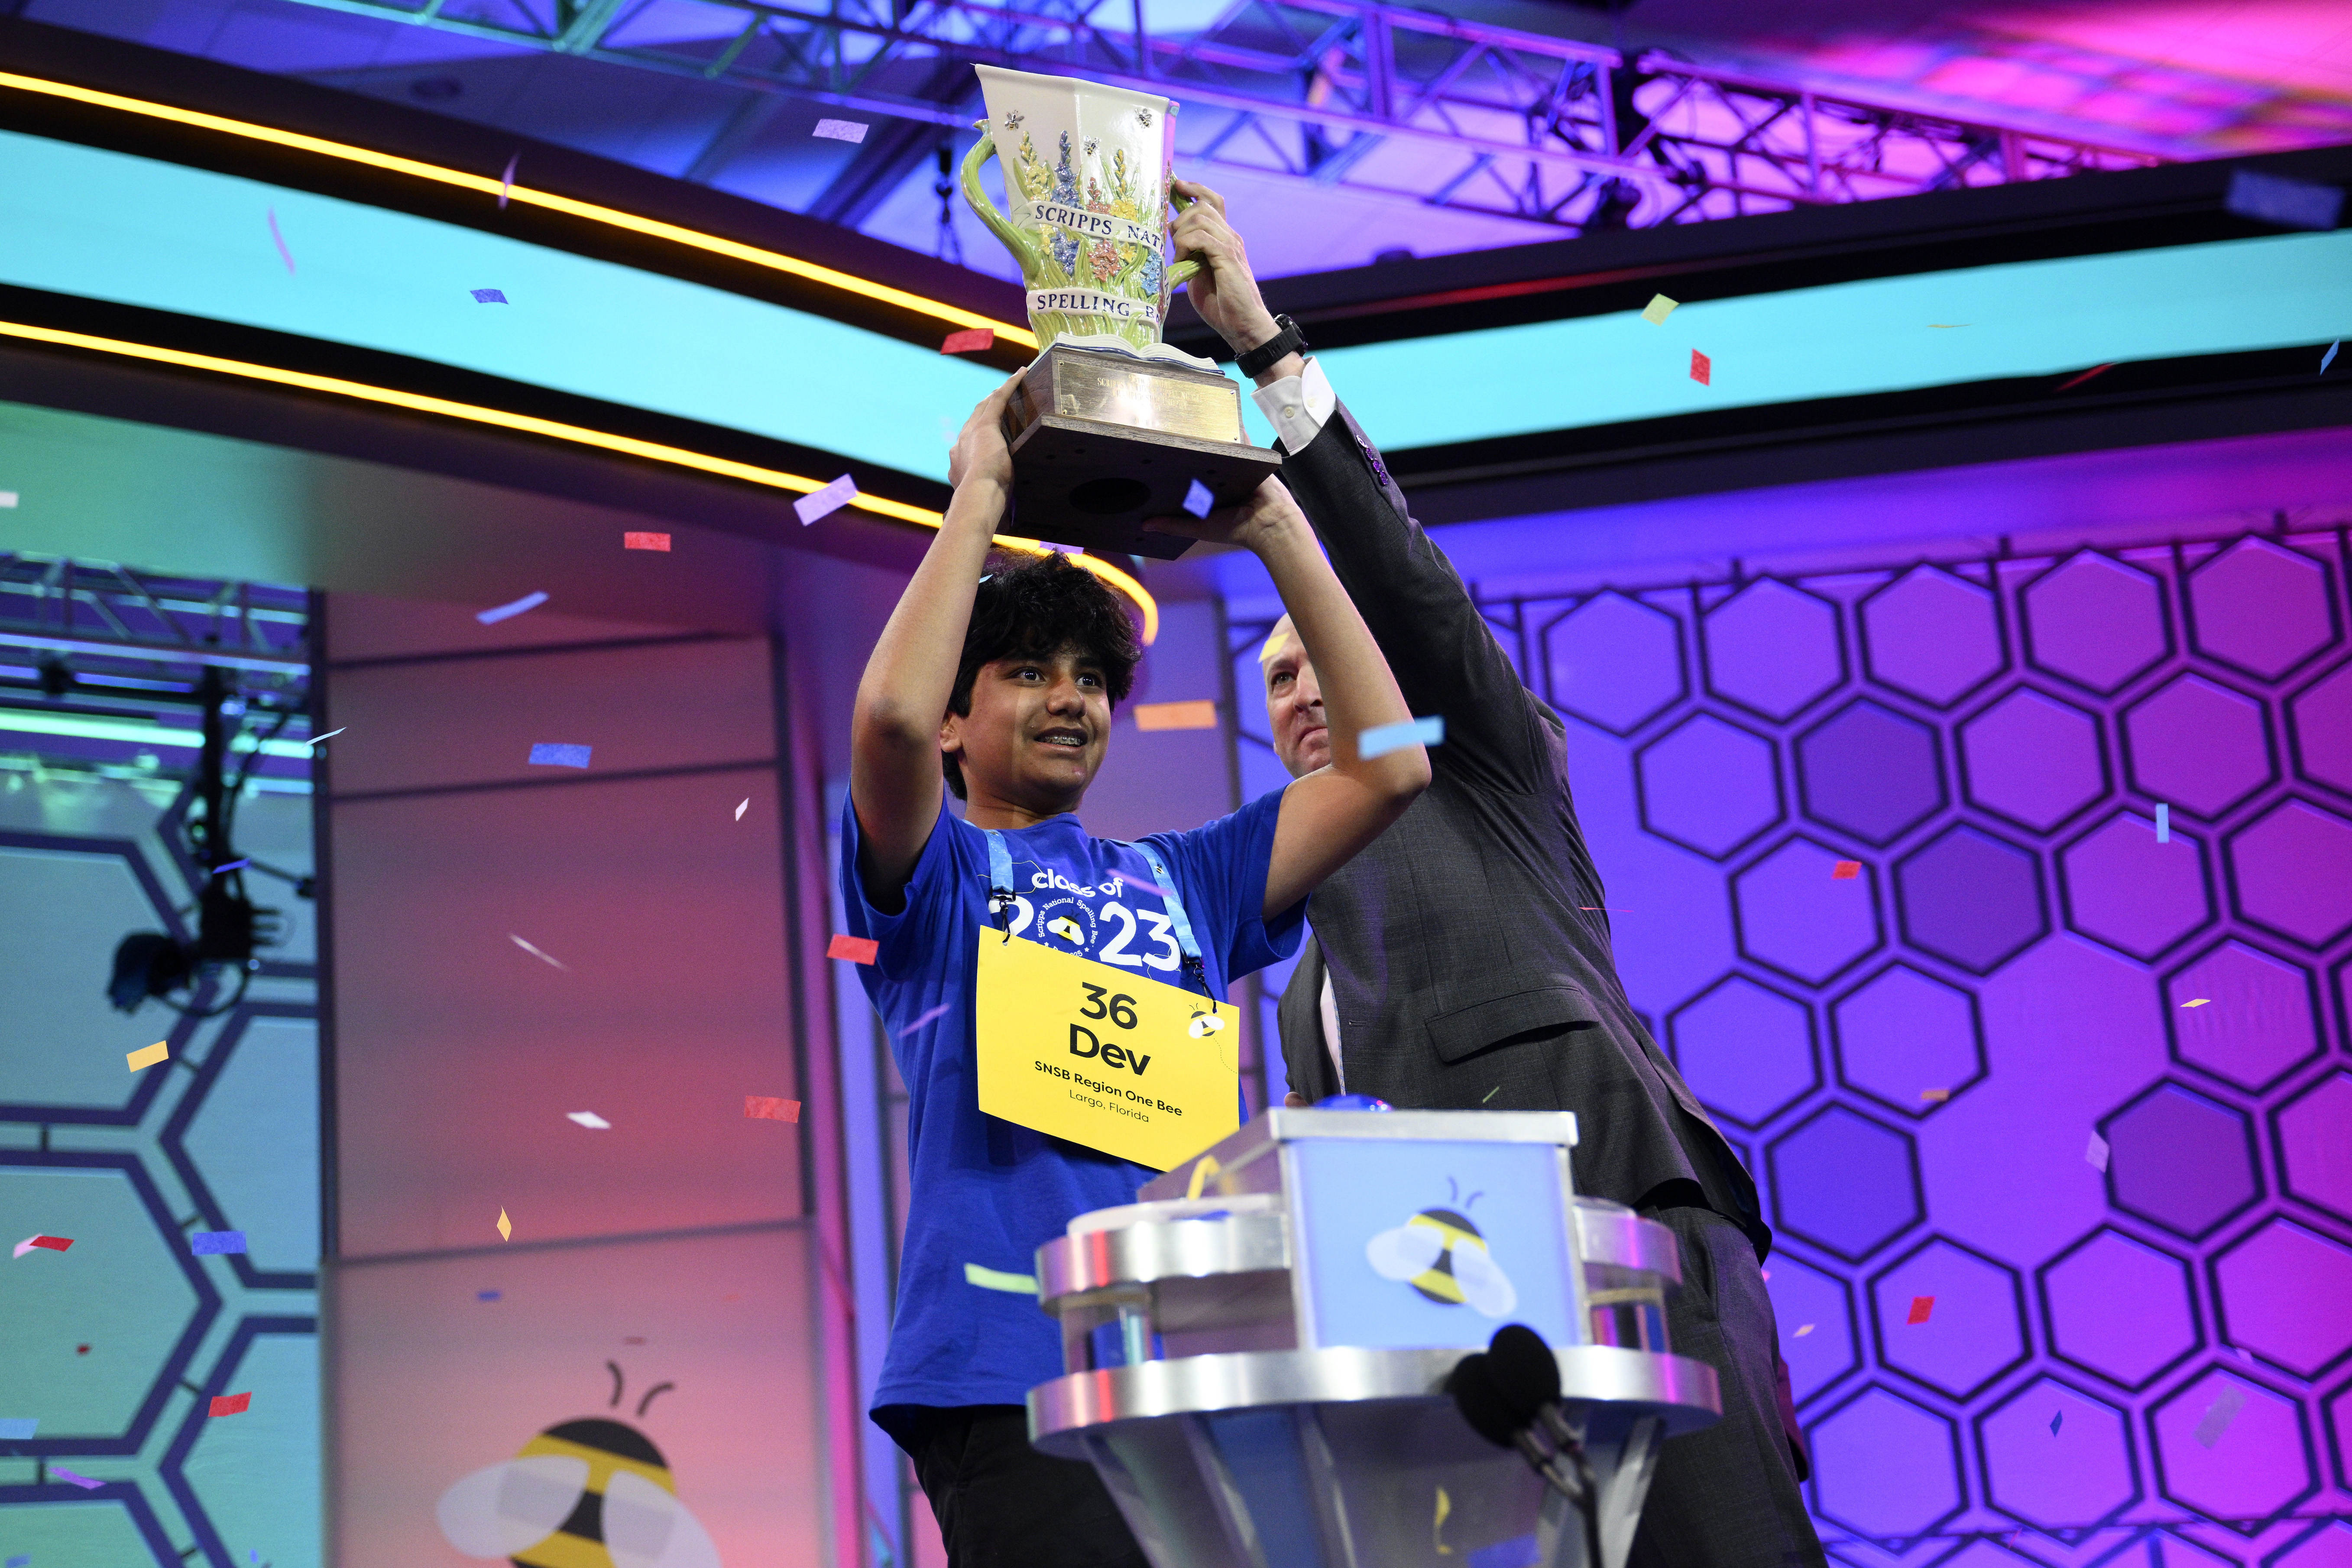 El campeón nacional de ortografía, Dev Shah, pasa de estar "desanimado" a absorber el momento